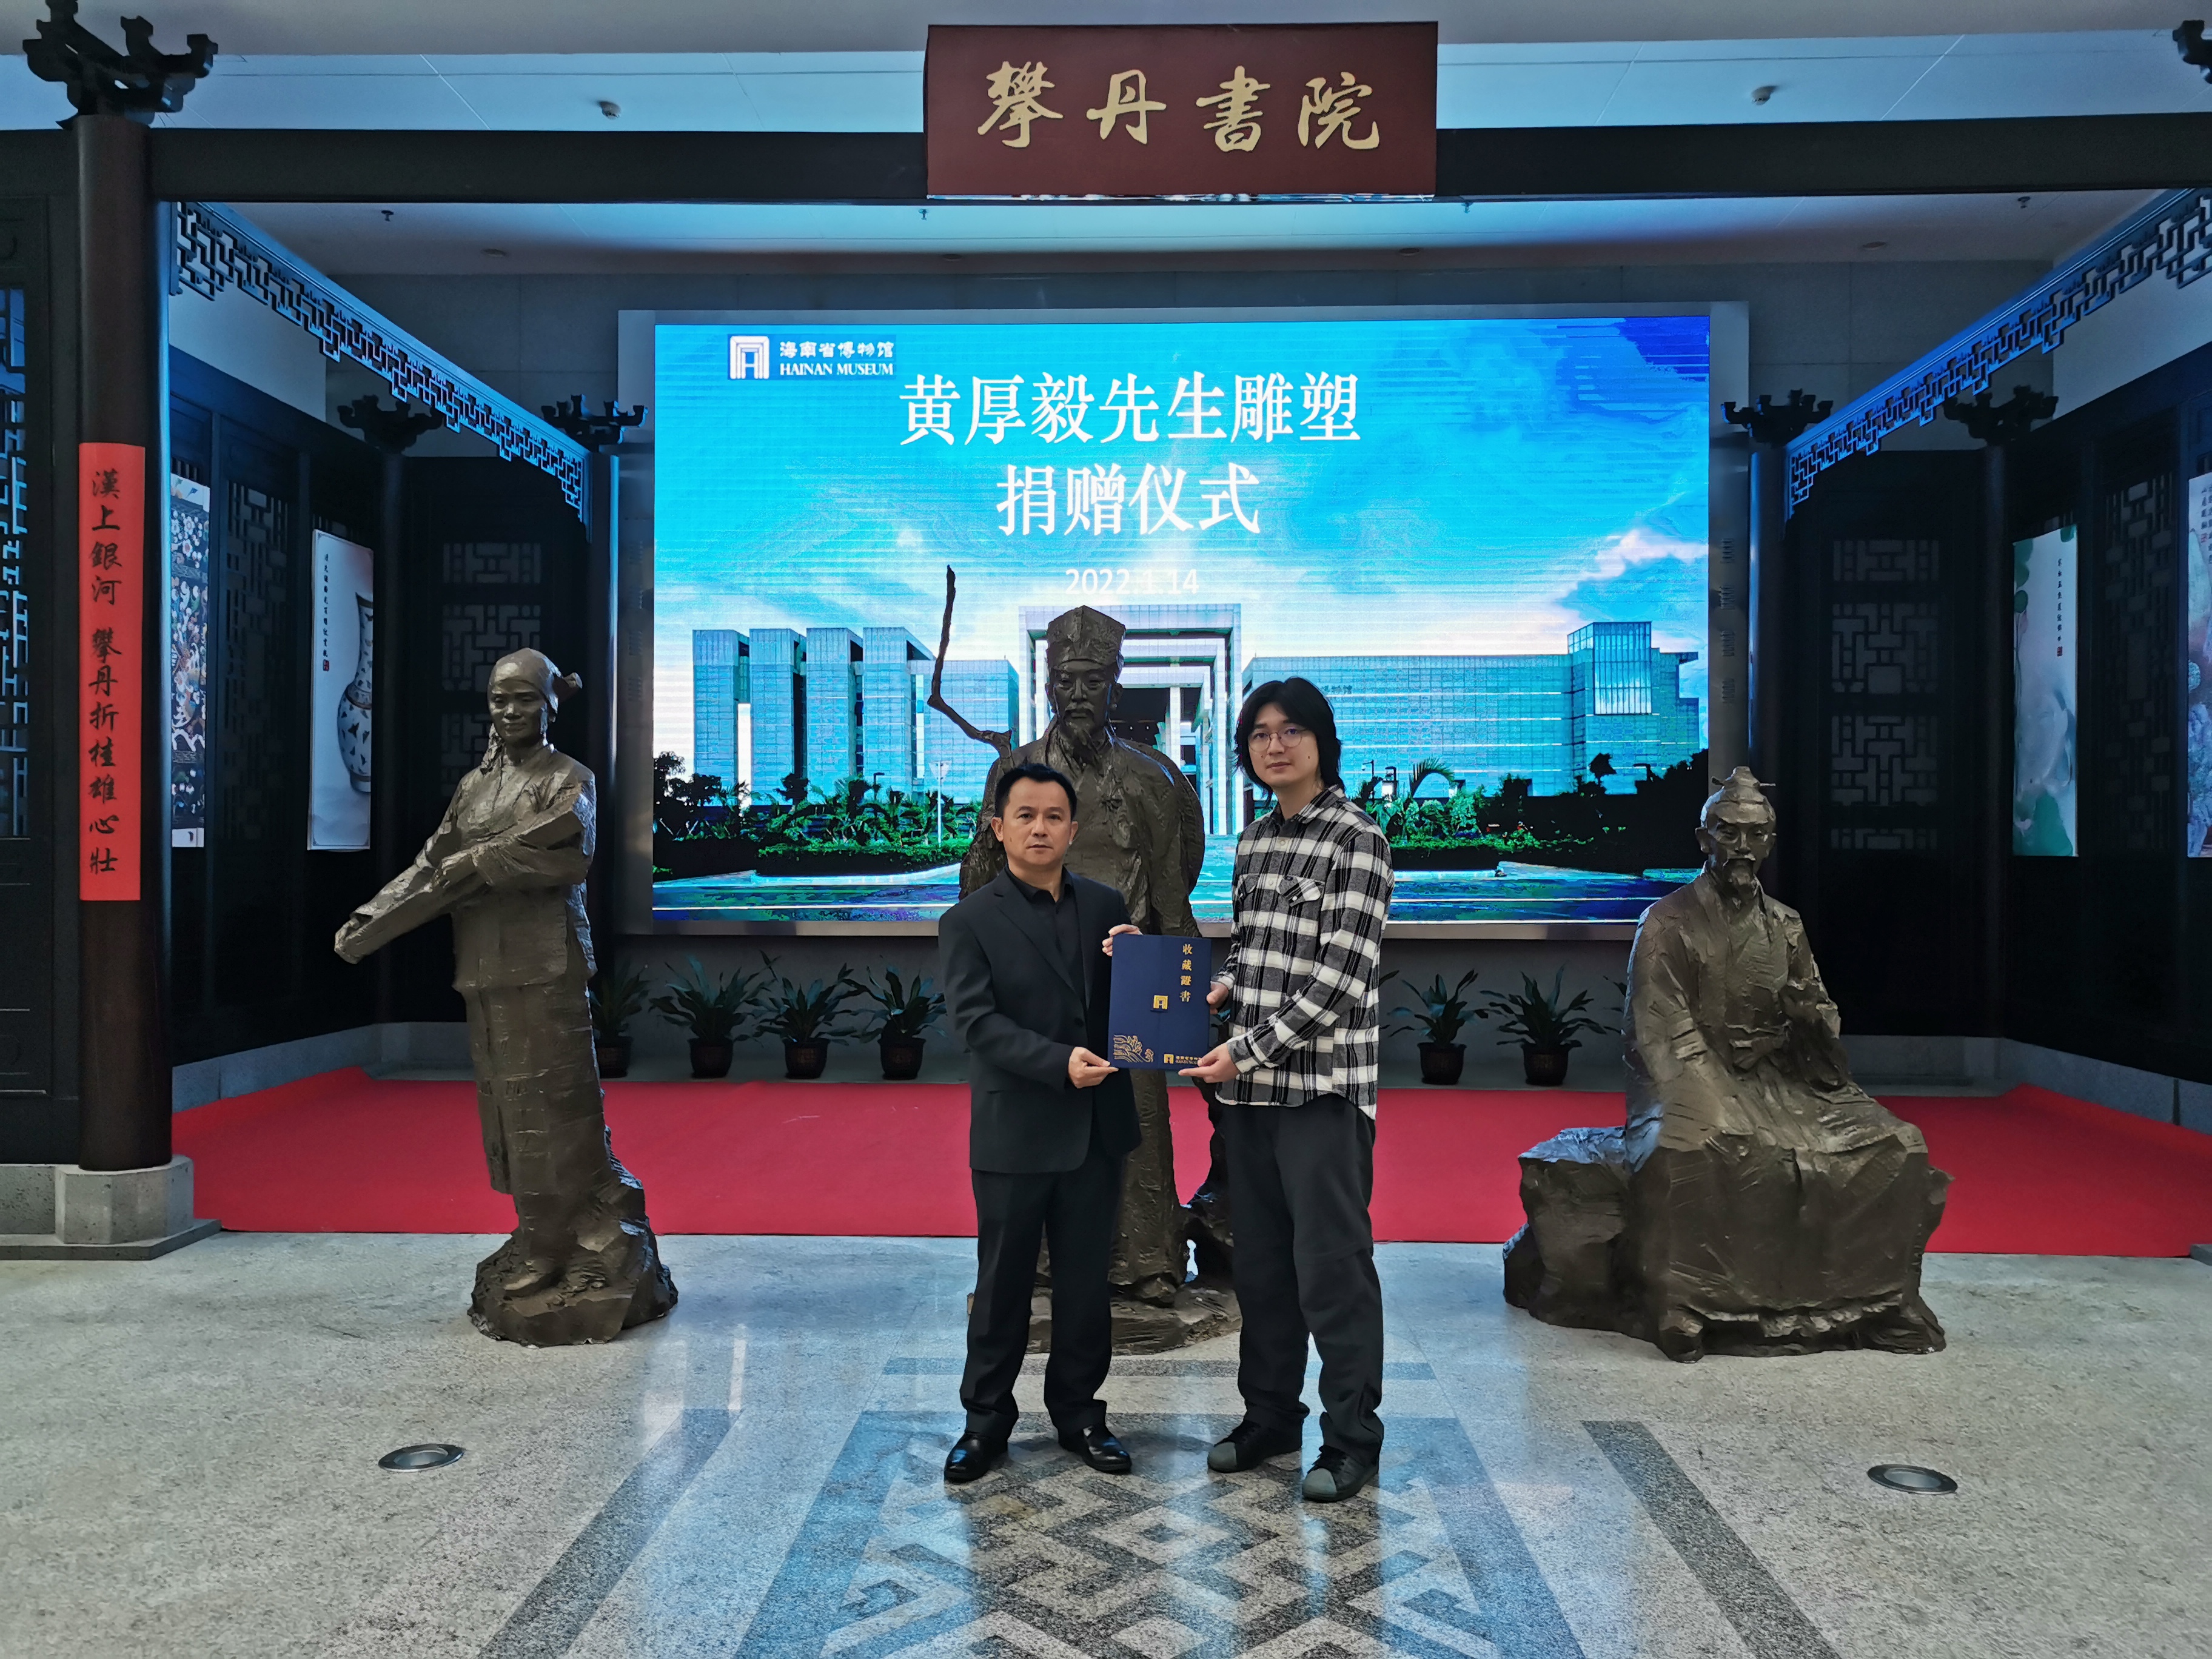 海南省博物馆举行“黄厚毅先生雕塑”捐赠仪式